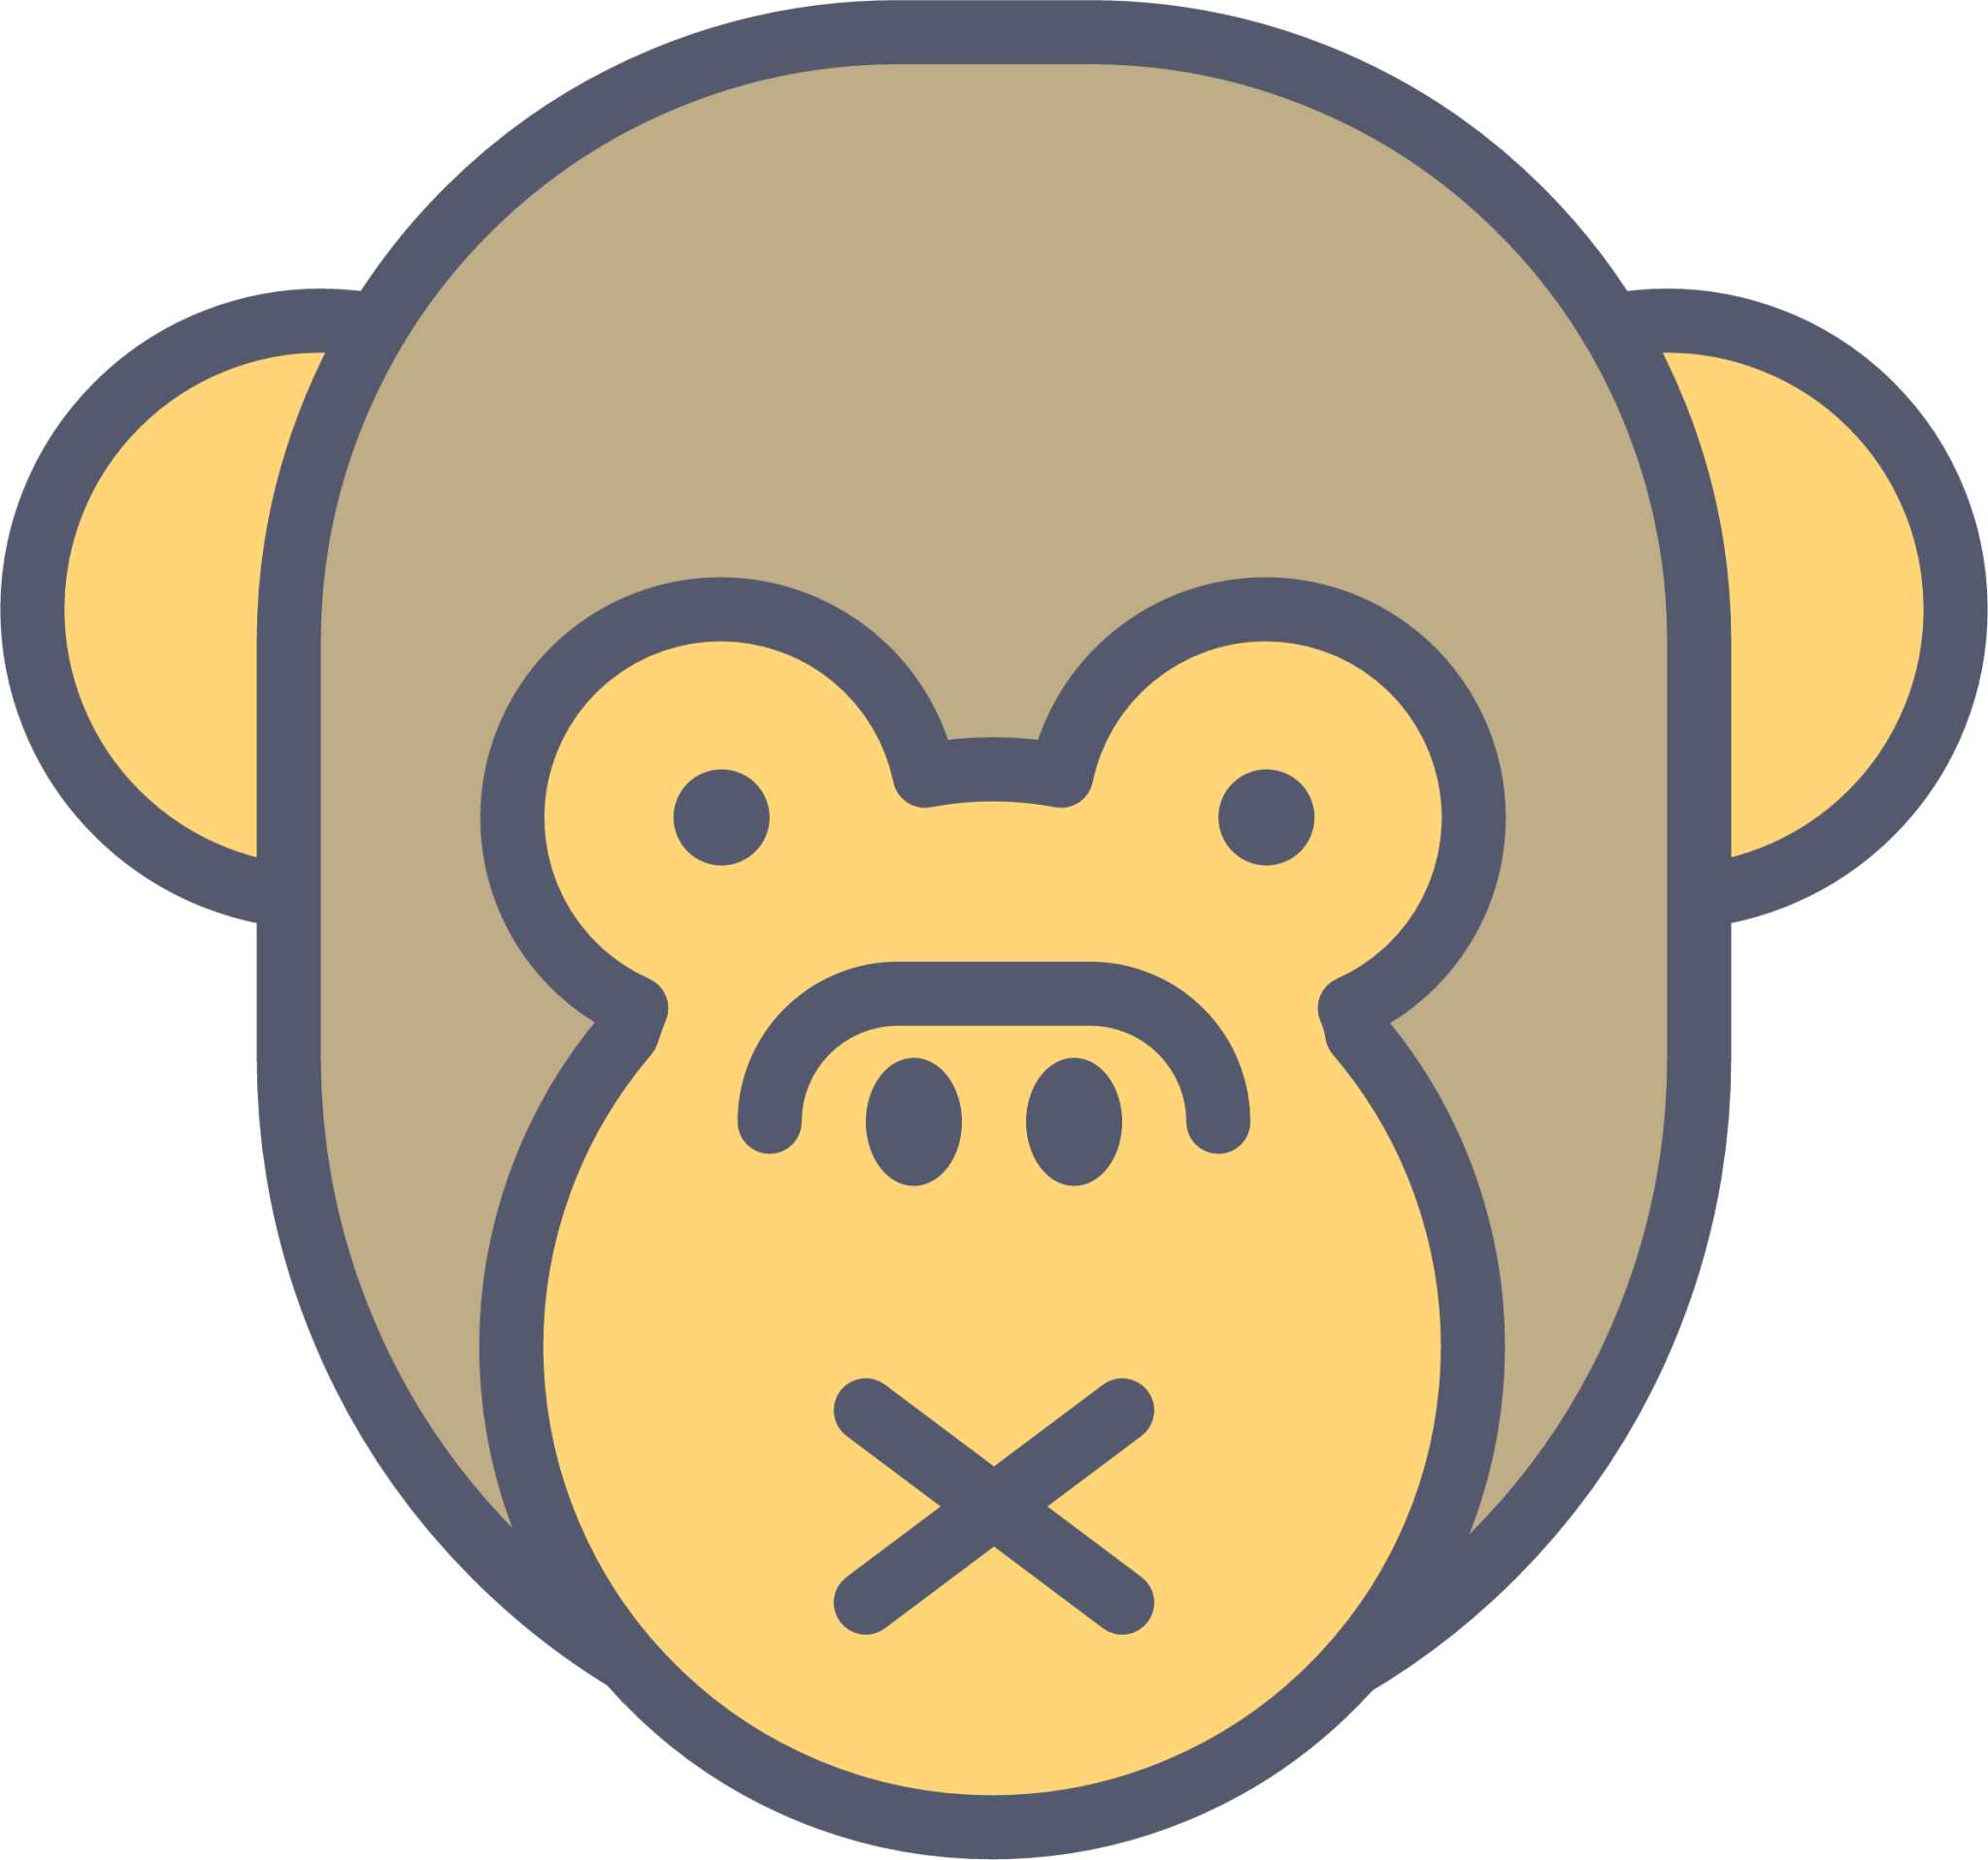 monkey silent icon